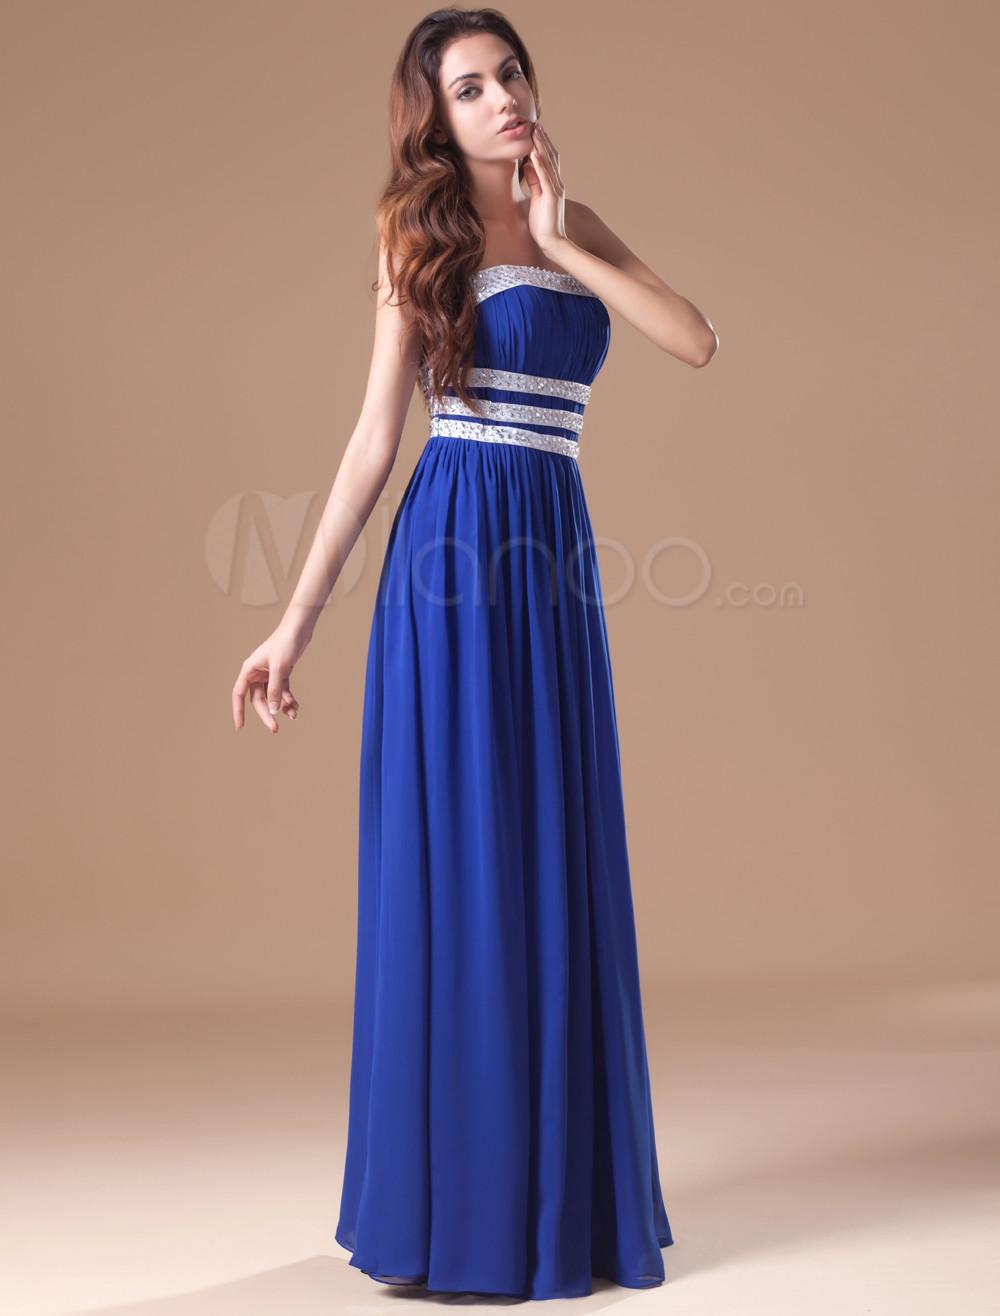 Foto Gasa azul elegante vestido de noche sin tirantes de la mujer foto 316555